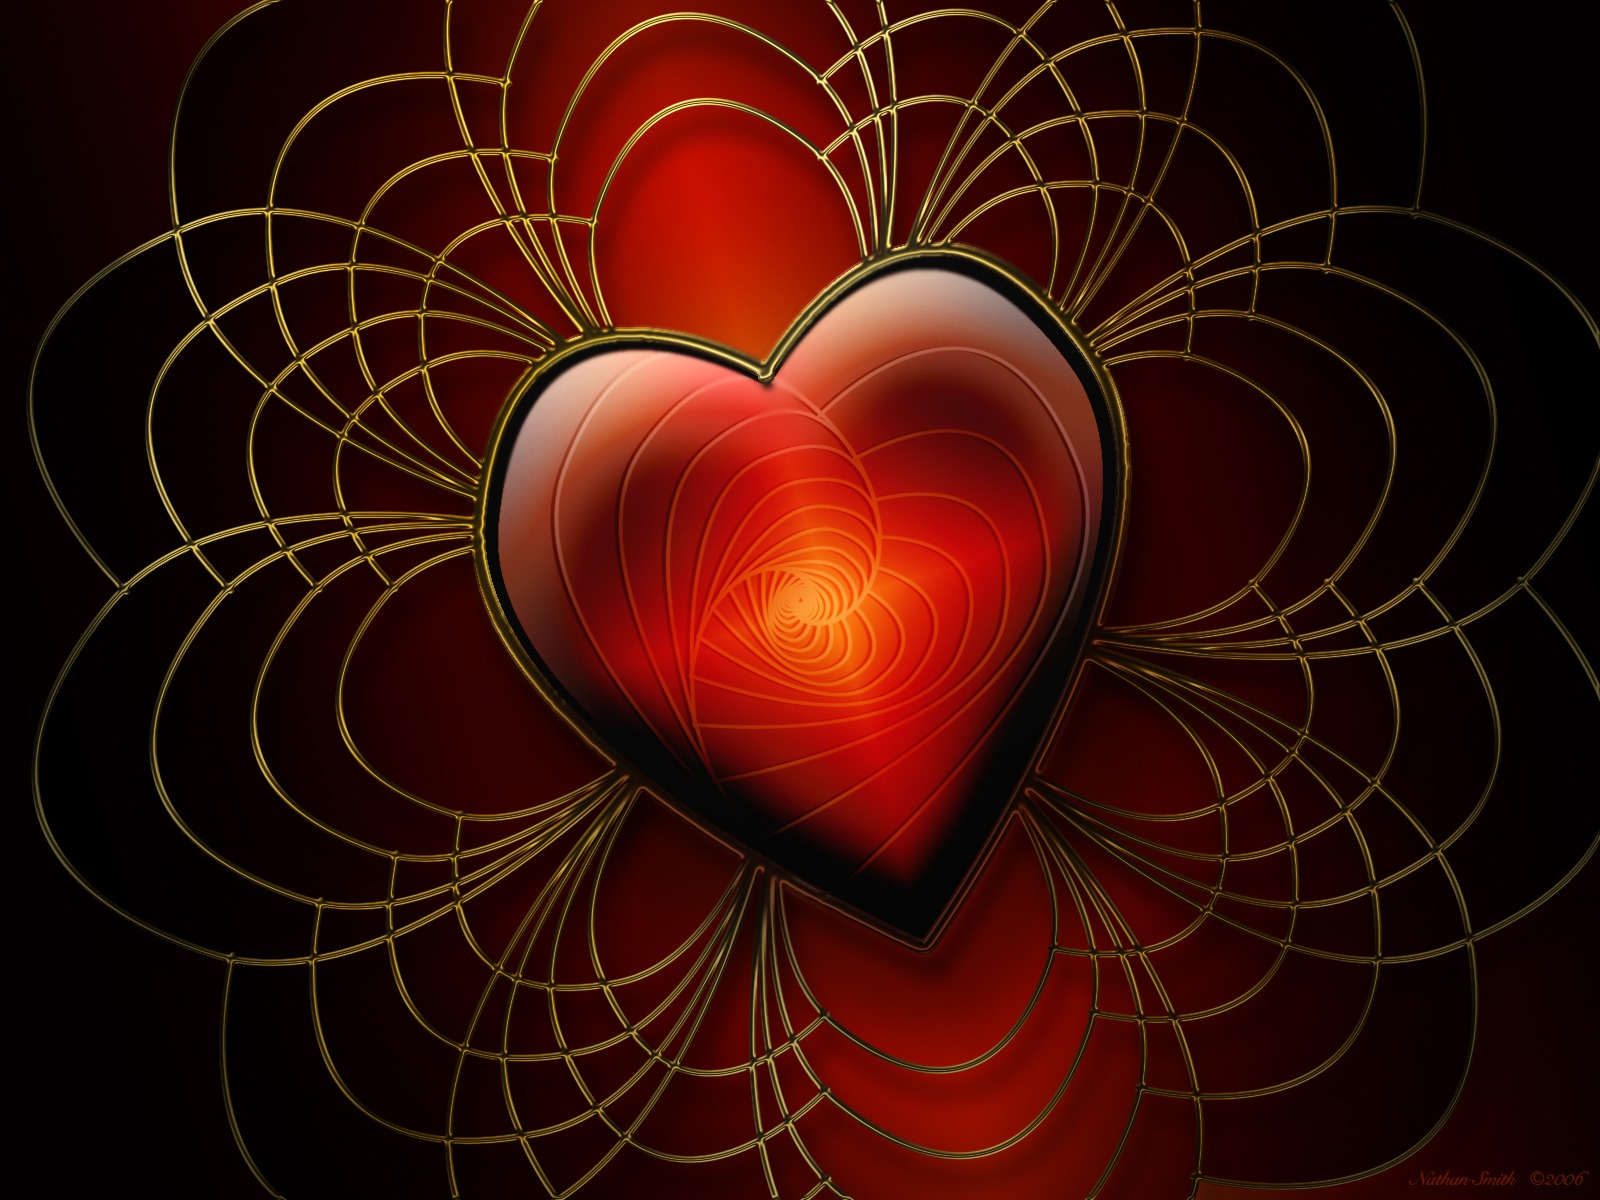 3d обои Сердце и удивительные плетения вокруг него...  сердечки # 79896